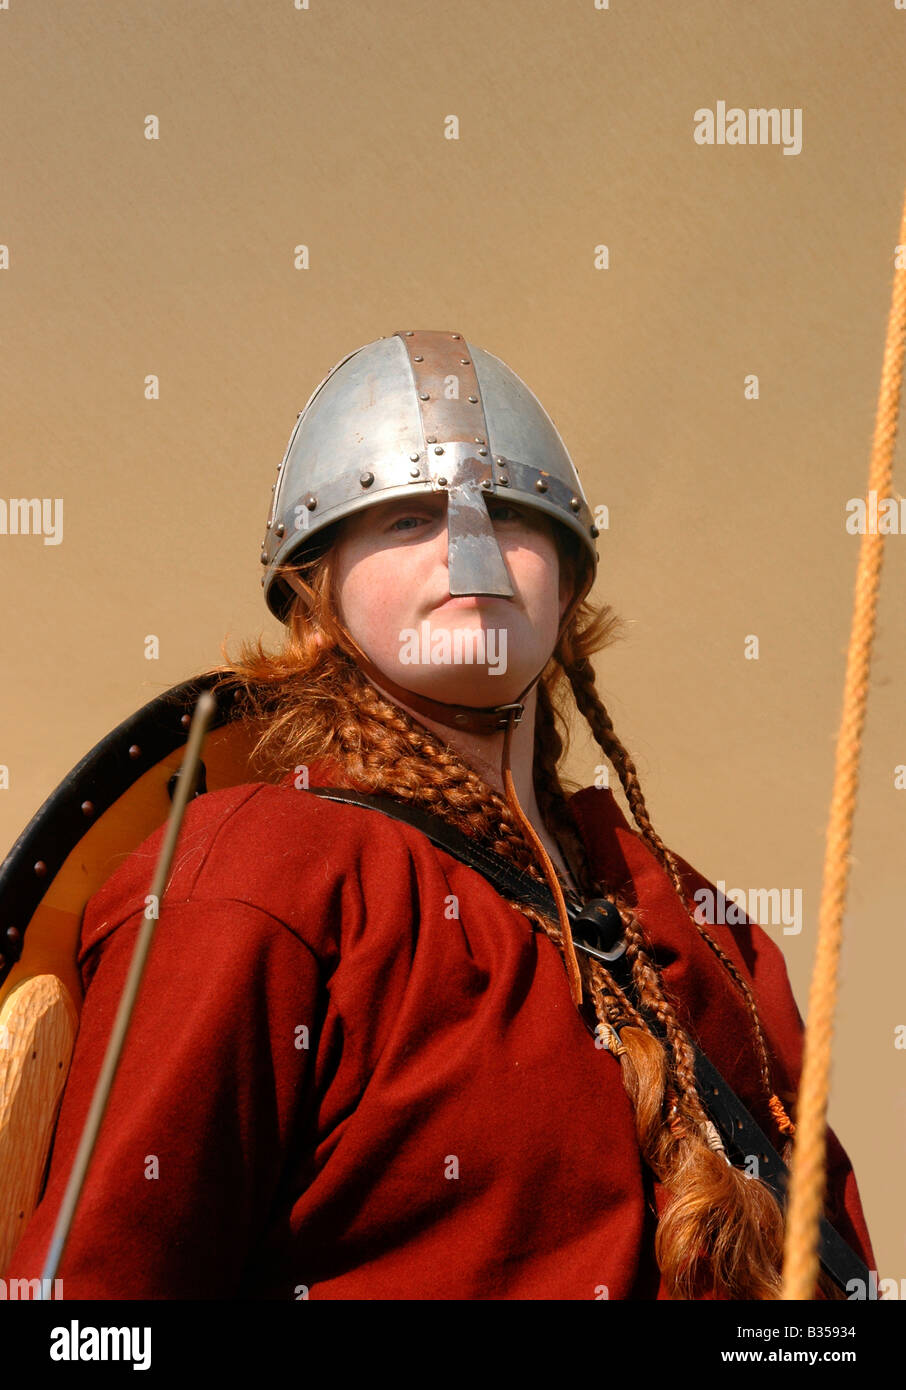 Un ritratto di una donna/ragazza appartenente ad un viking gruppo di rievocazione storica in costume d'epoca - pronti per la battaglia. Foto Stock